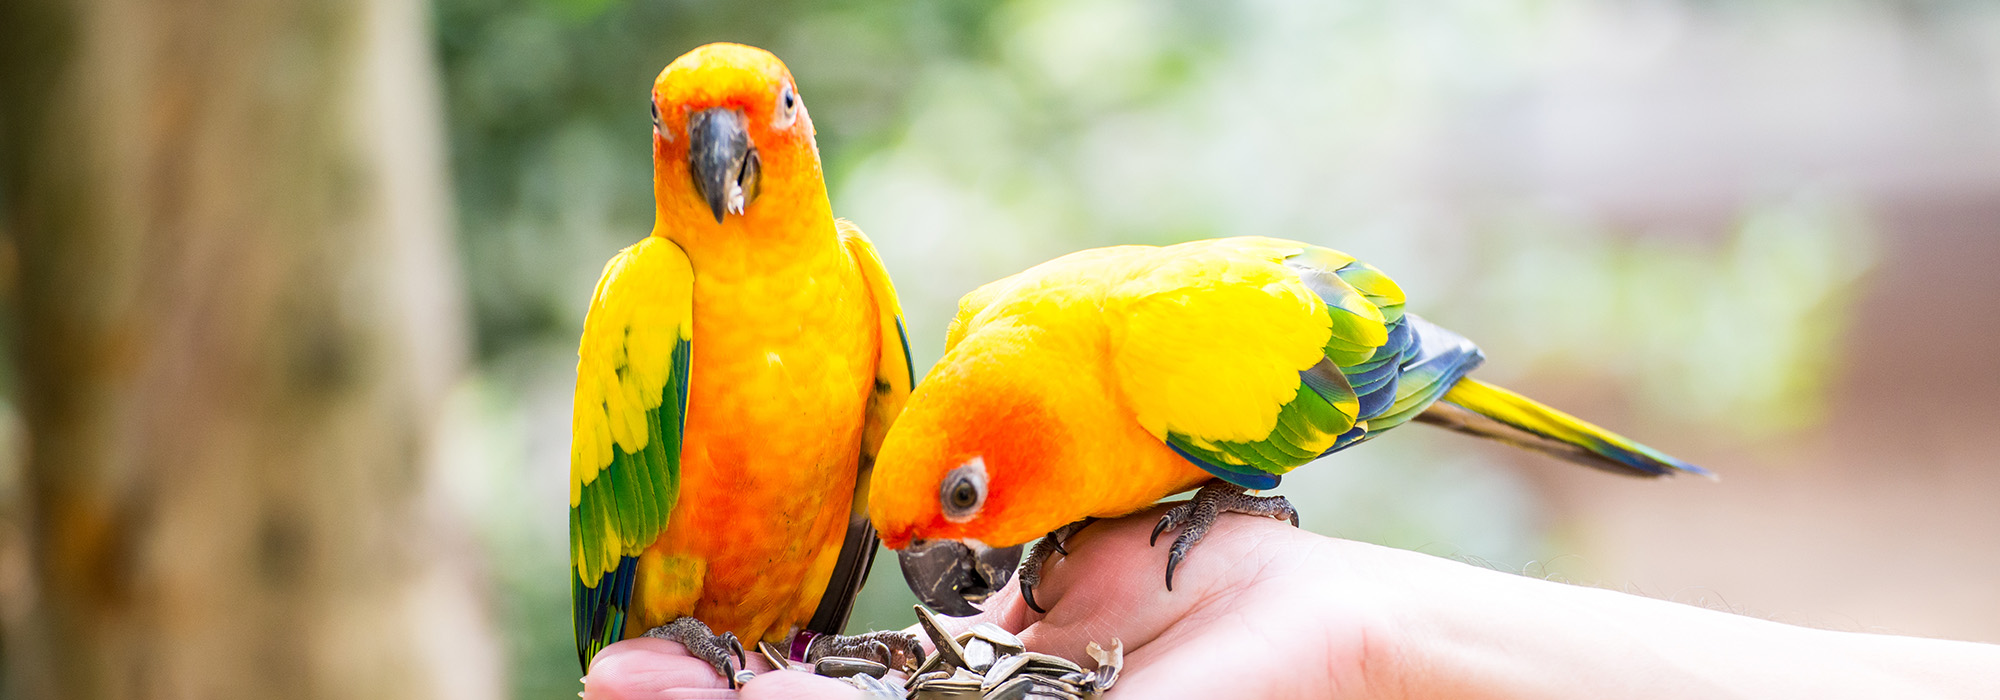 Deux oiseaux aux couleurs vives mangeant dans une main